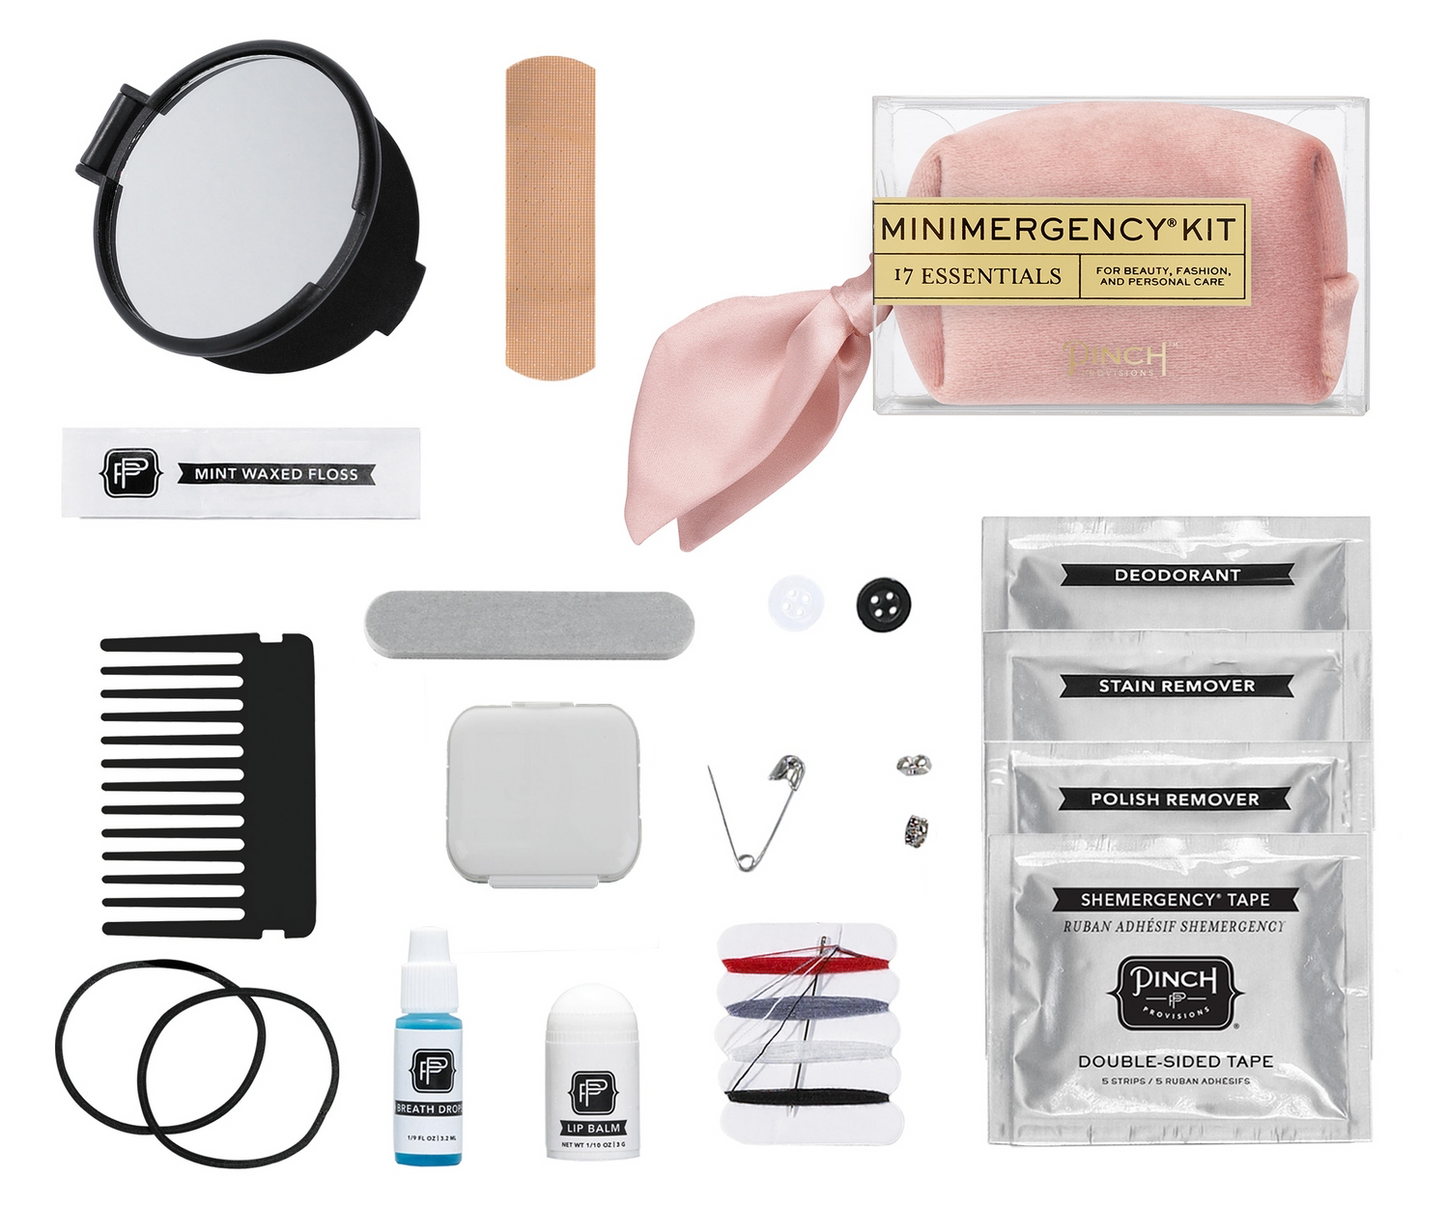 Pinch Provisions - Velvet Scarf Minimergency Kit